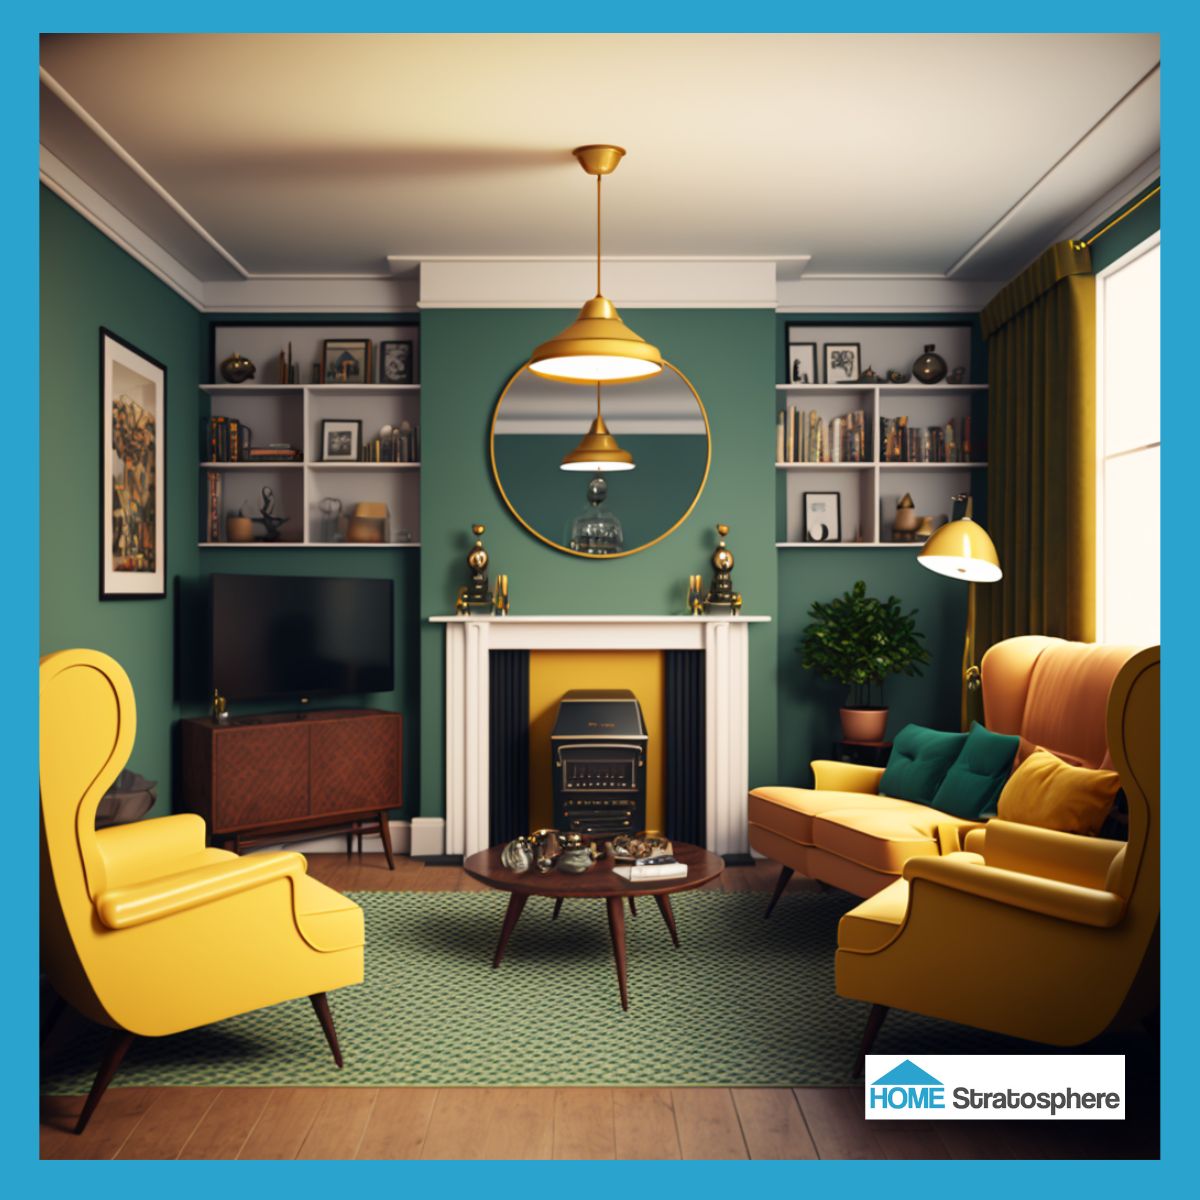 在客厅里你可以看到更多的绿色和黄色。它看起来不像壁炉可用，但有平板电视和内置架子等功能，你可能不会错过它!这块有图案的绿色地毯铺在硬木地板上很好看。